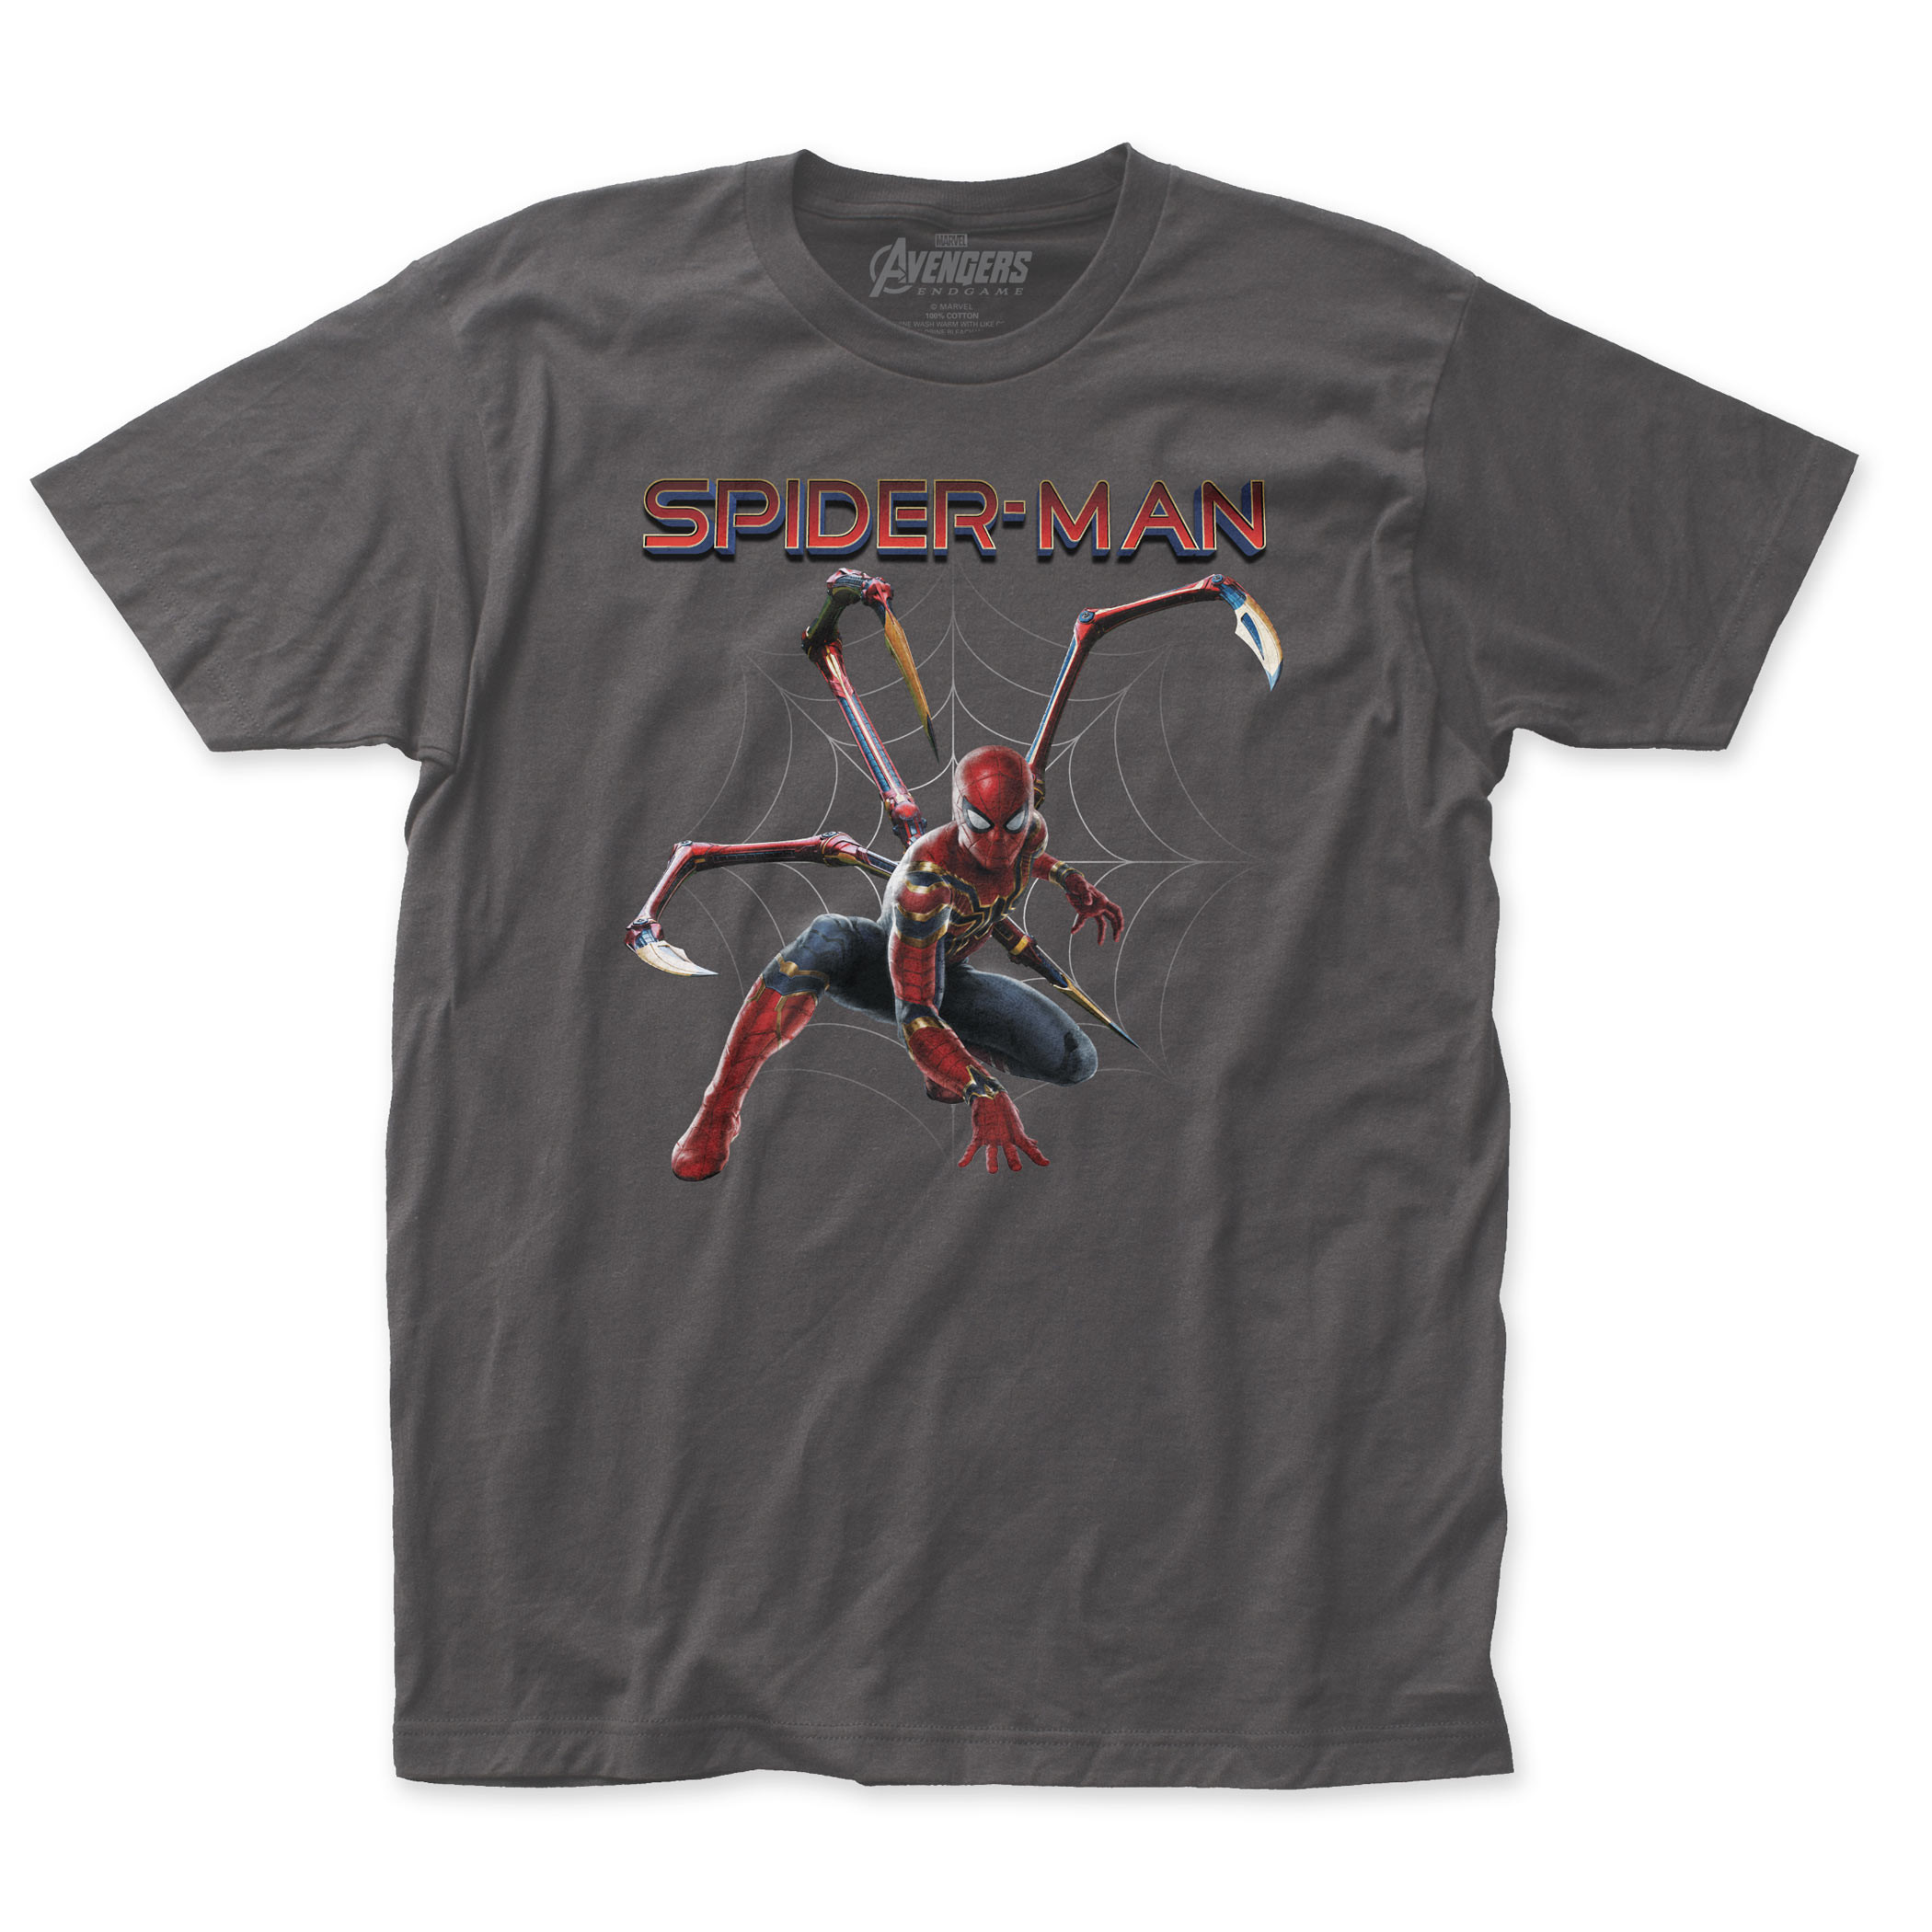 Spider-Man Avengers Endgame Iron-Spider Men's T-Shirt